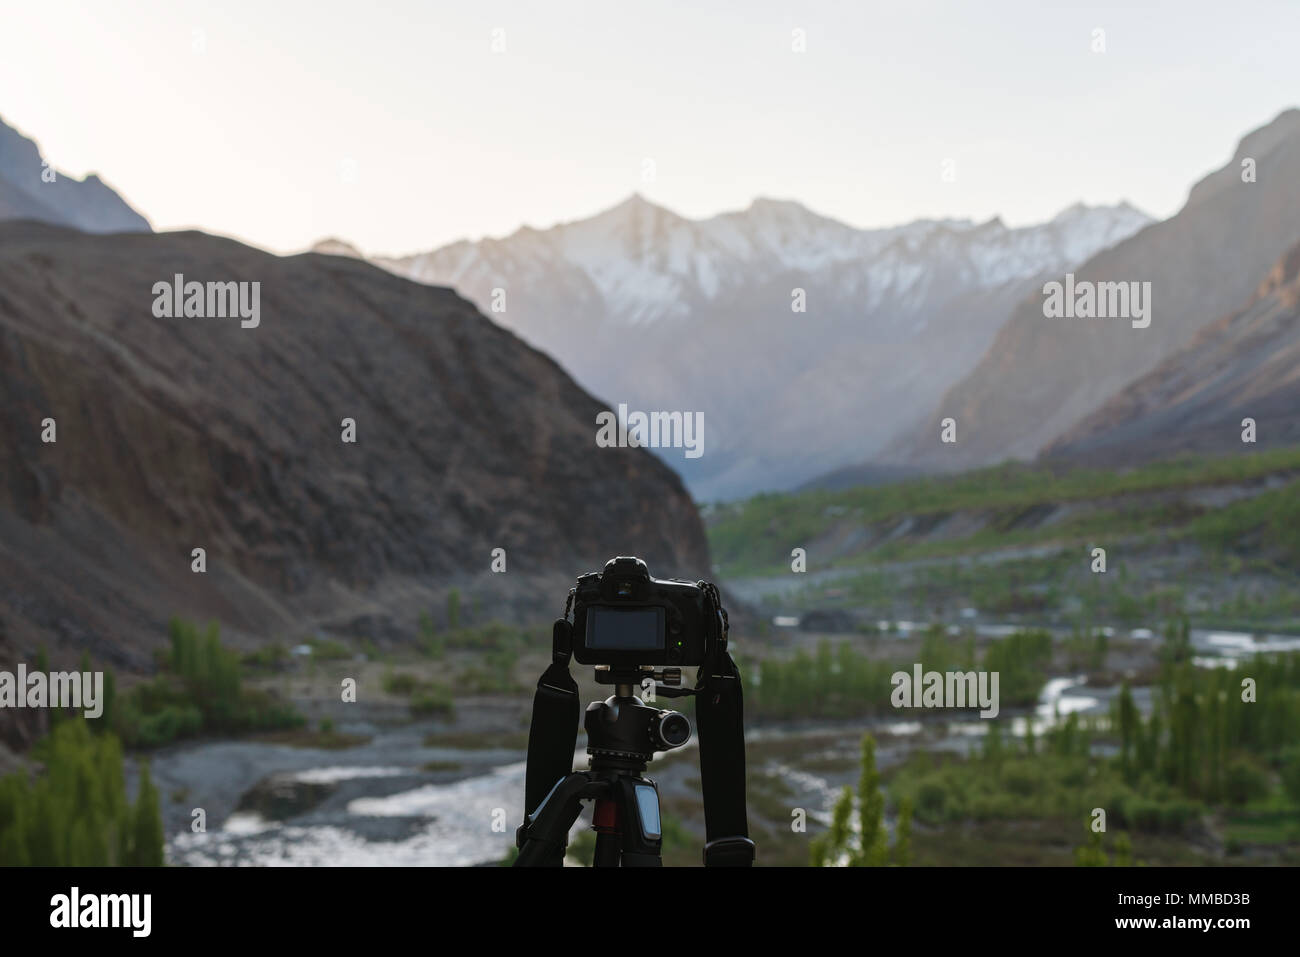 Landschaft Fotografie von DSLR-Kamera, bei Hunza Tal in Pakistan Stockfoto